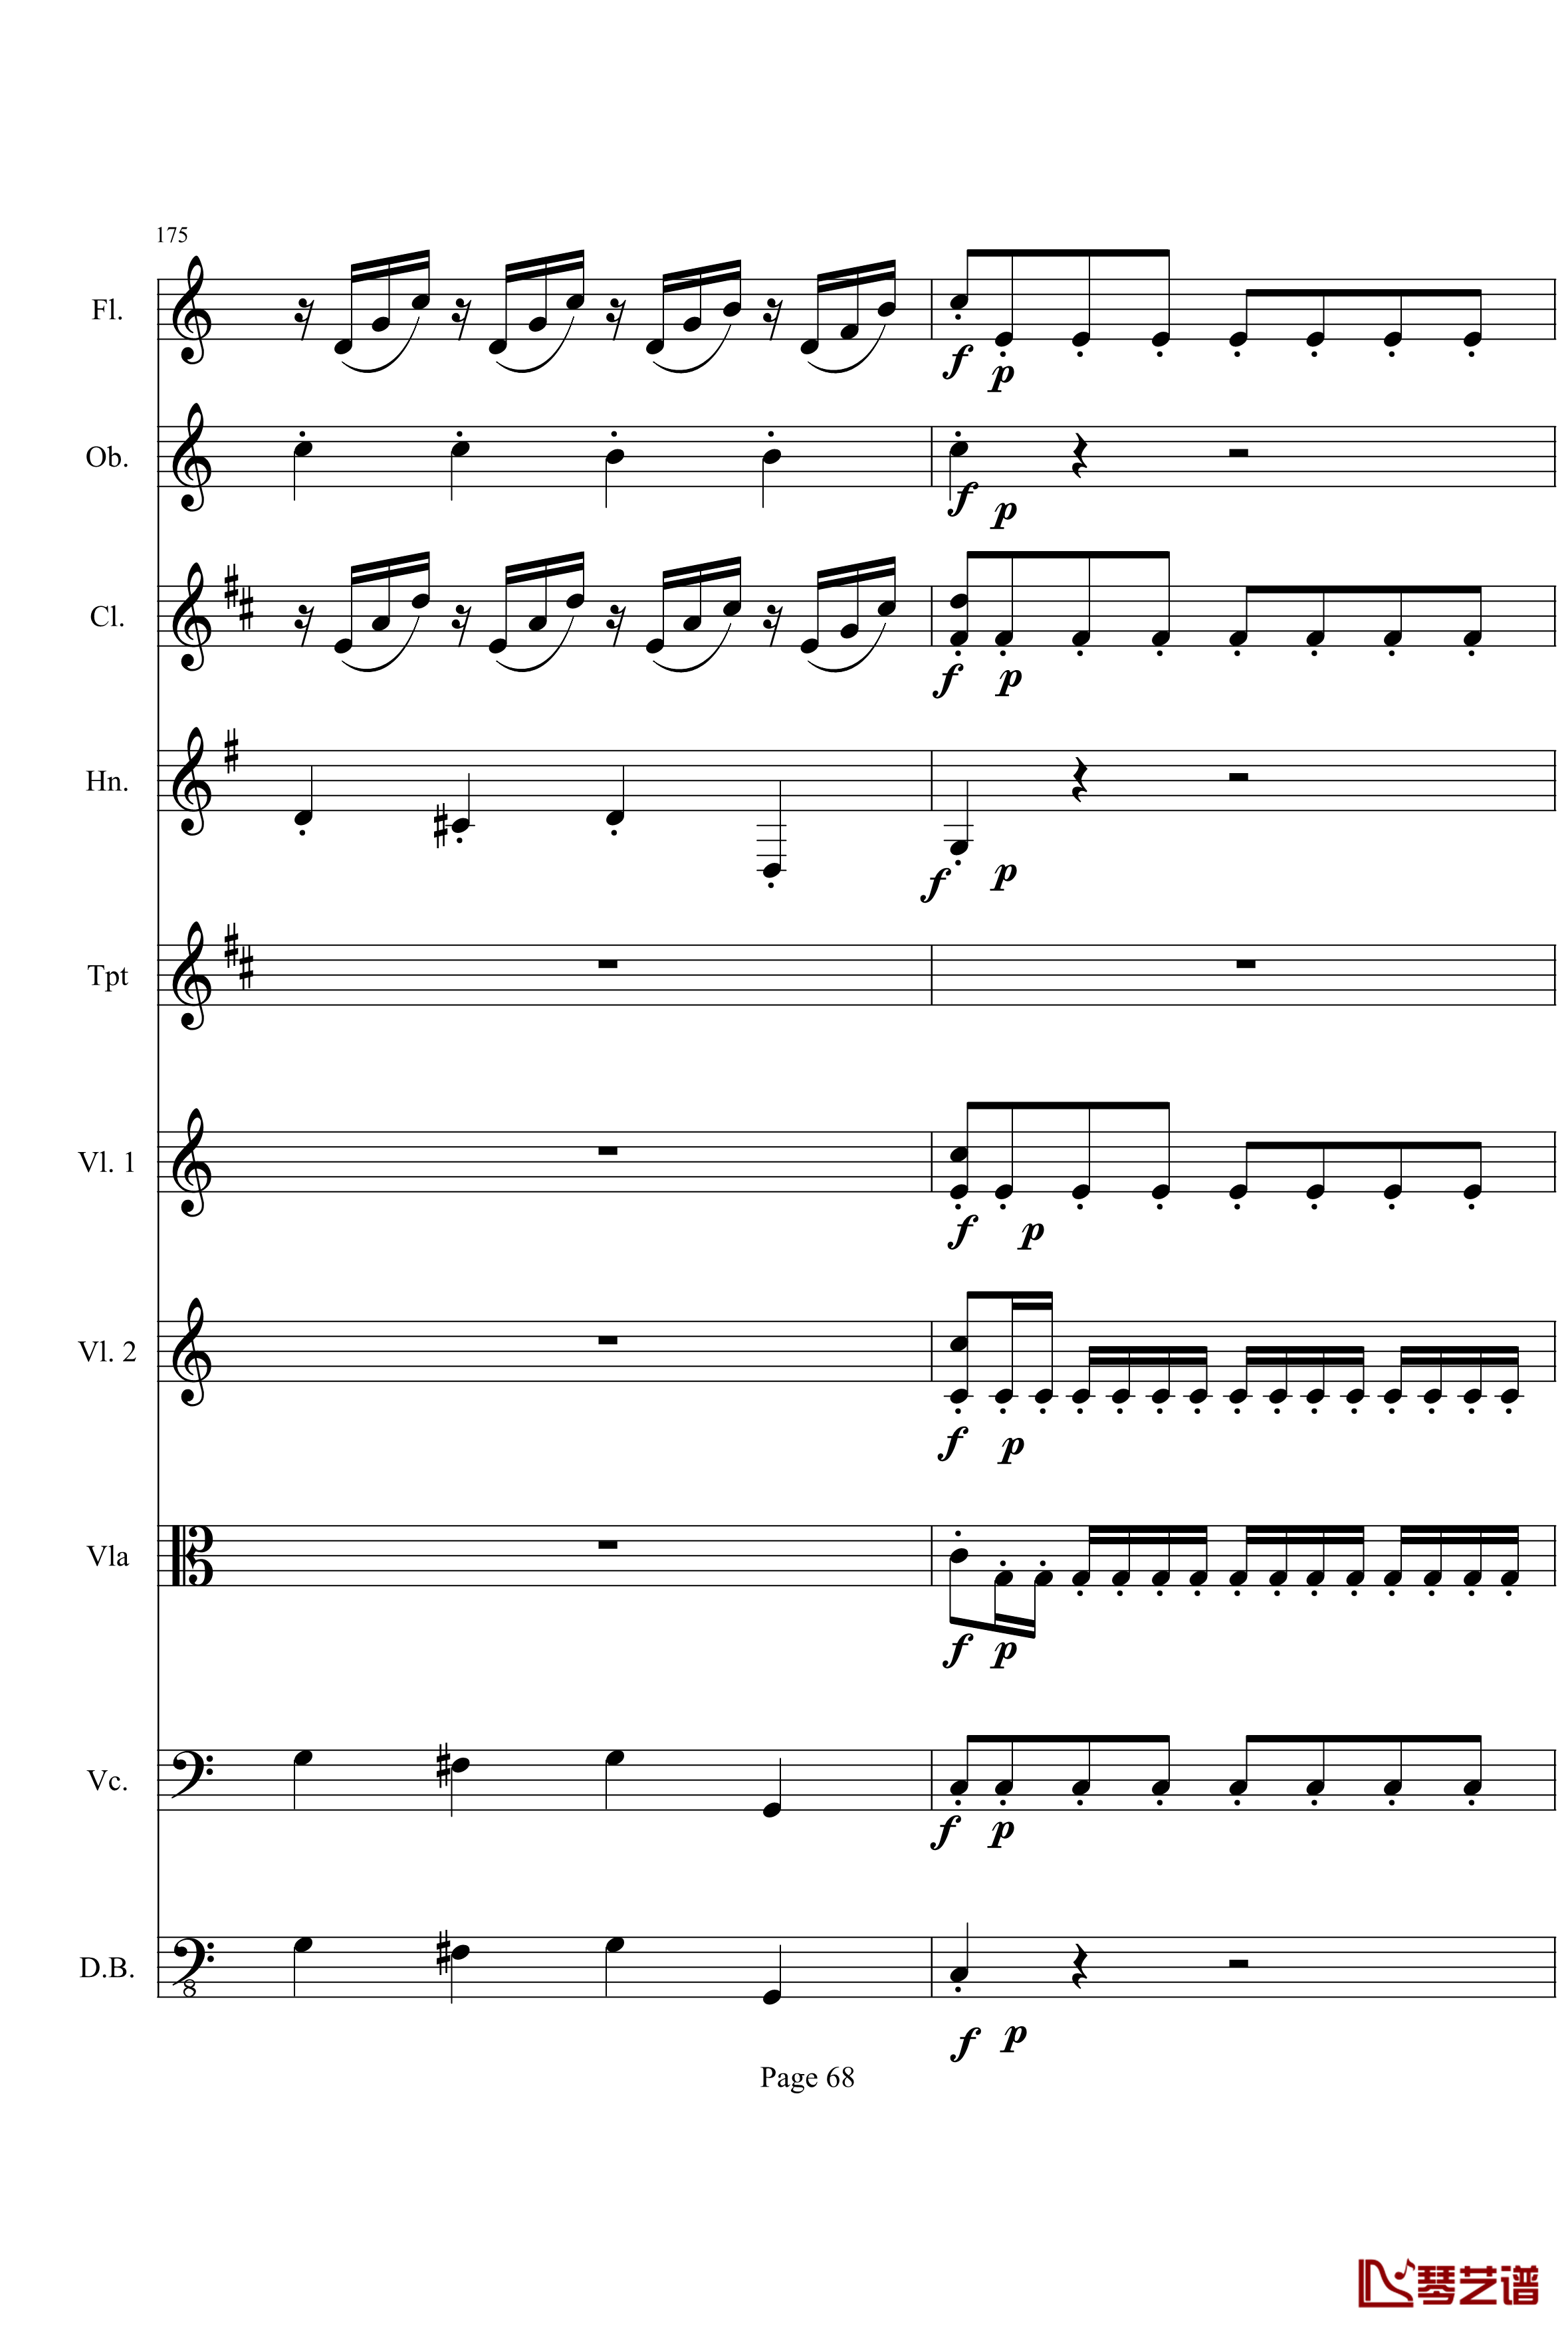 奏鸣曲之交响钢琴谱-第21-Ⅰ-贝多芬-beethoven68